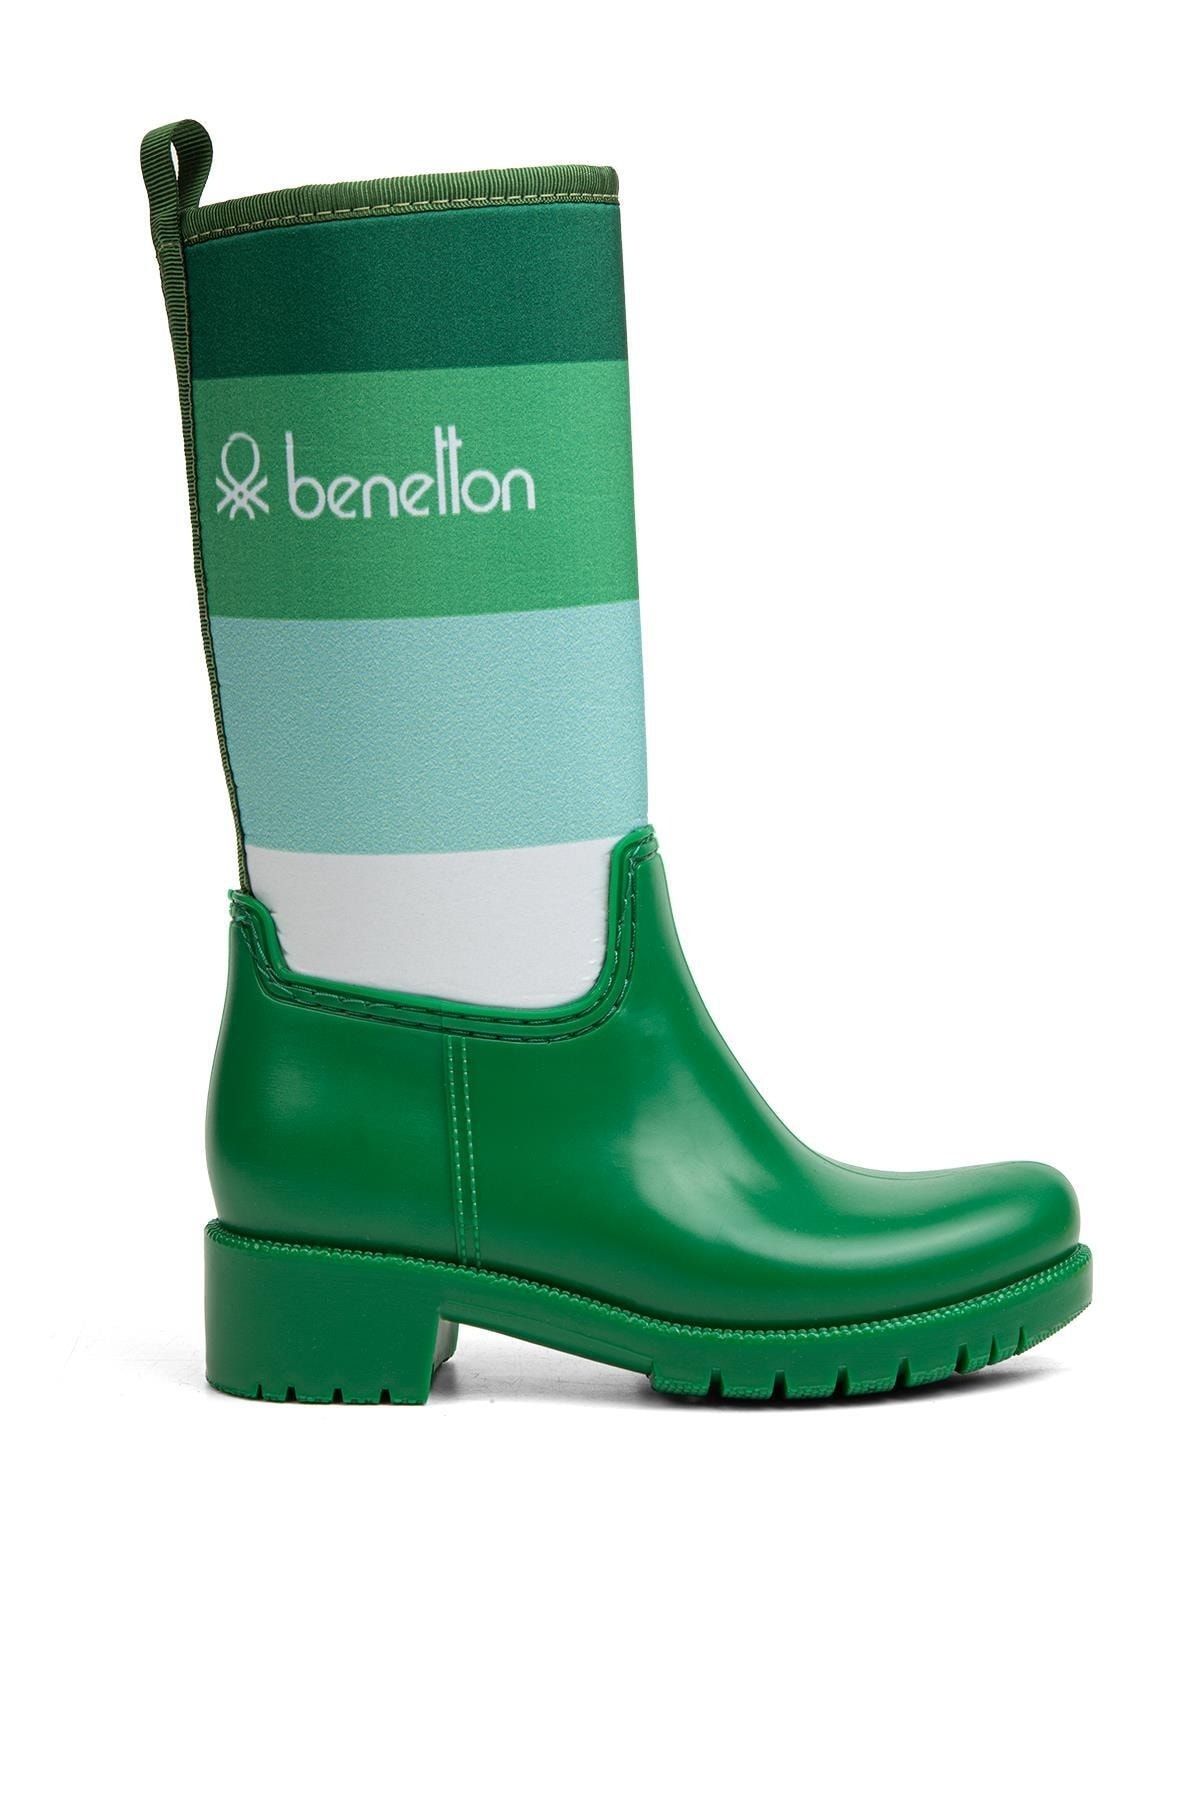 Benetton ® | Bn-50017 - 34124 Yesil - Çocuk Bot